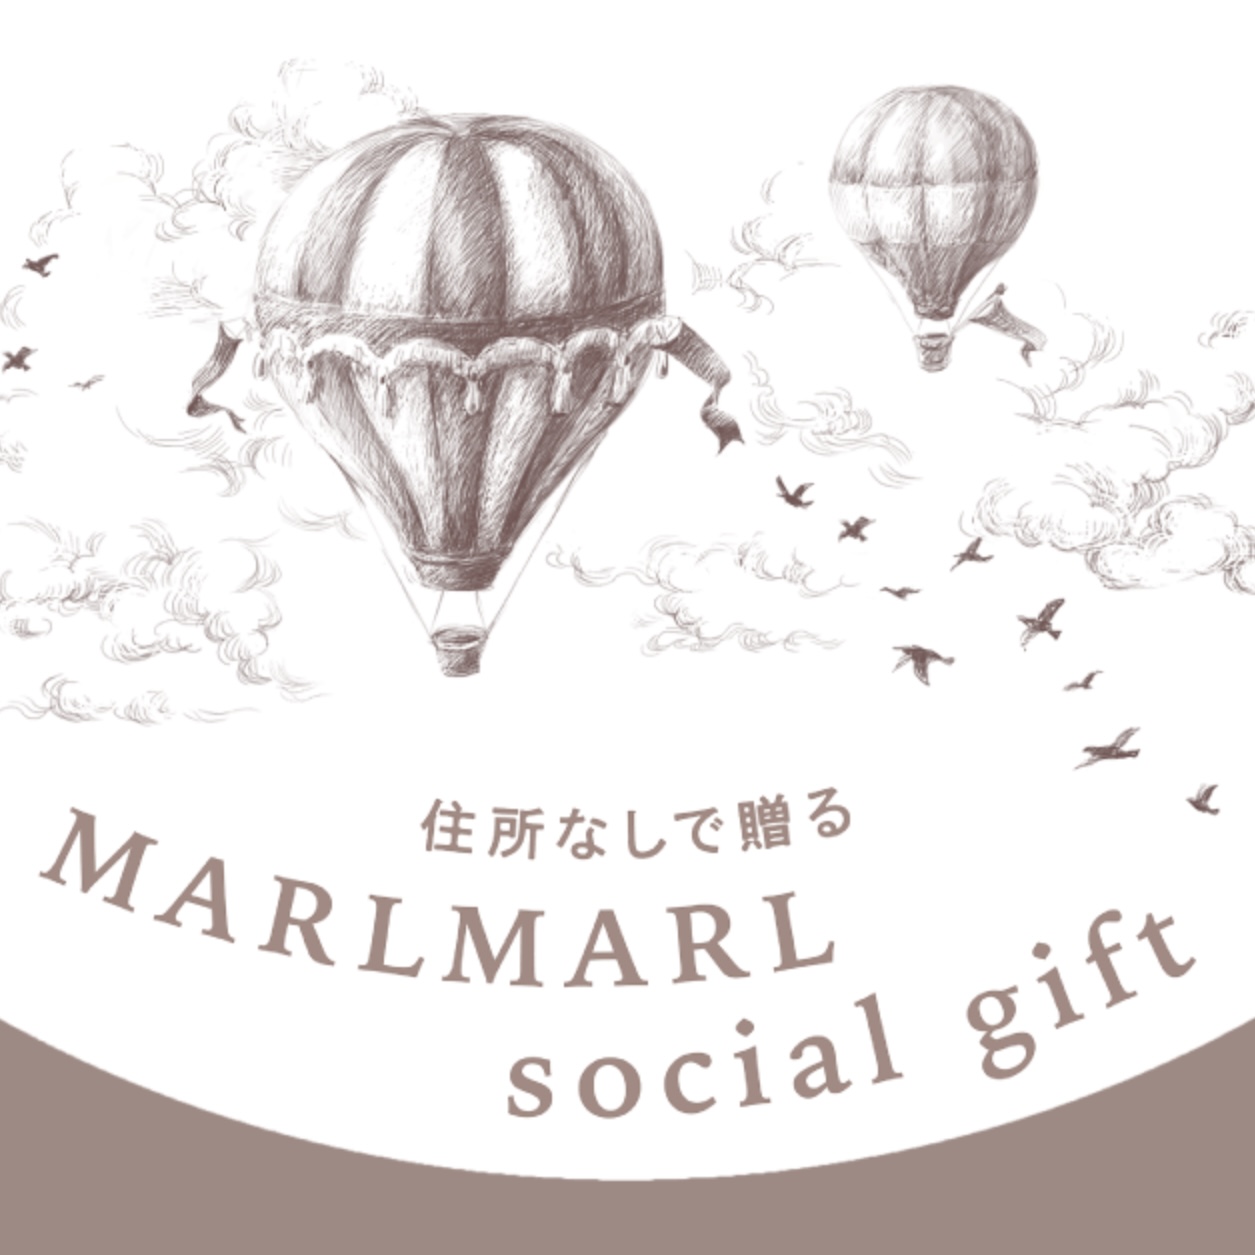 対象アイテムが大幅アップ！ MARLMARL social gift